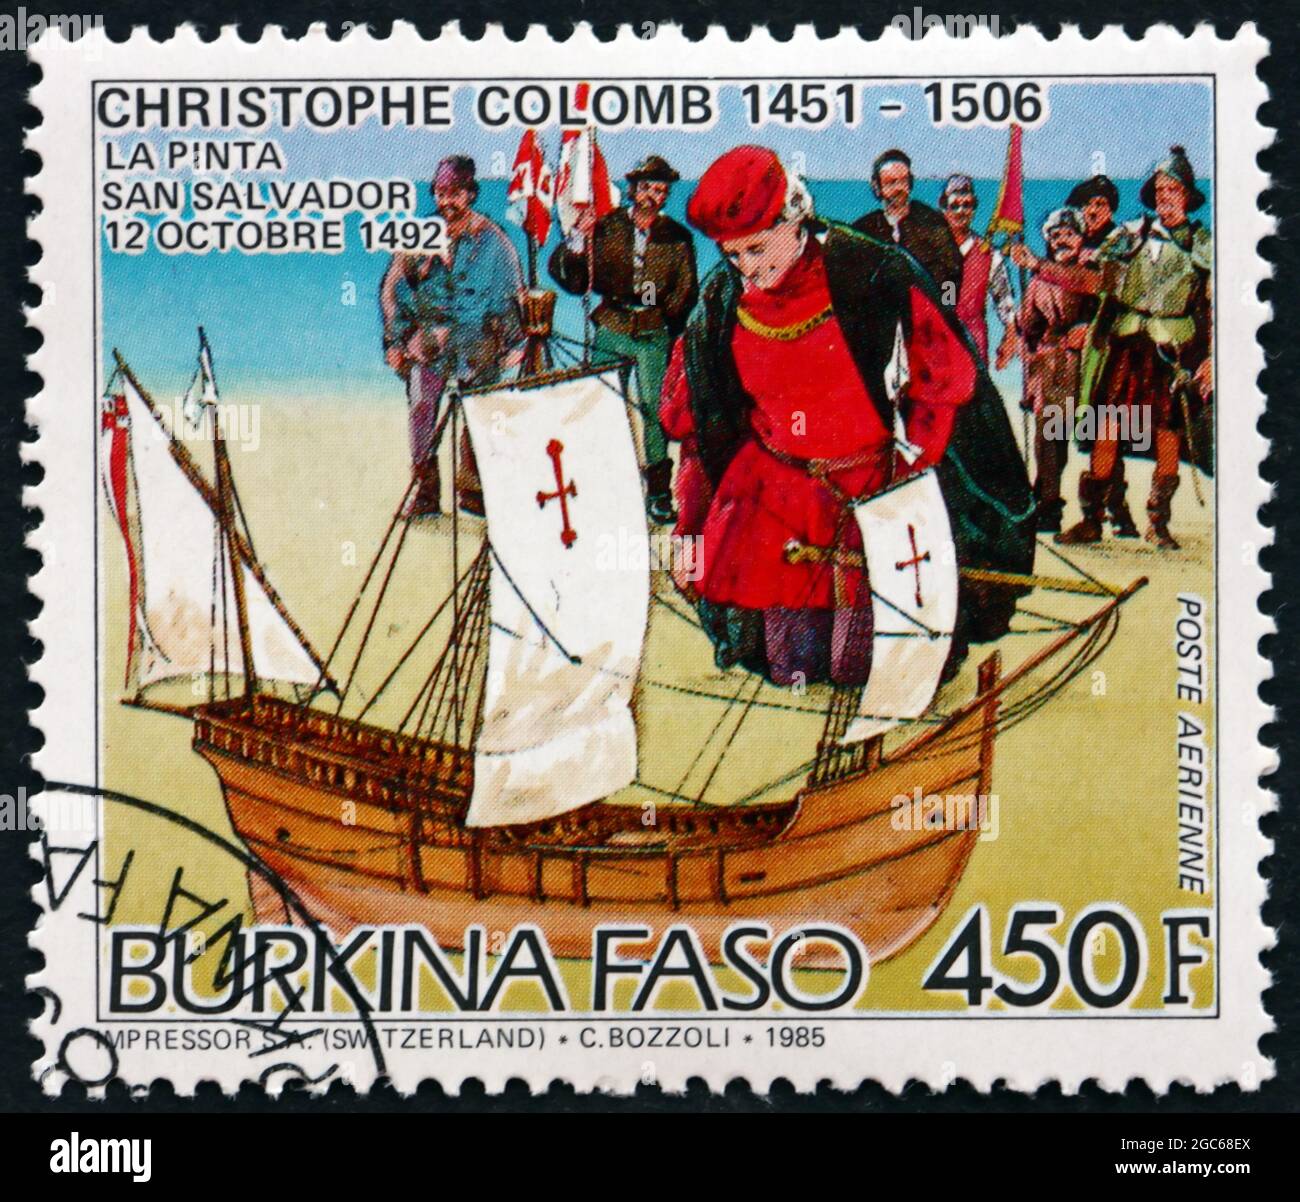 BURKINA FASO - UM 1986: Eine in Burkina Faso gedruckte Briefmarke zeigt Christoph Kolumbus in San Salvador und die Pinta um 1986 Stockfoto